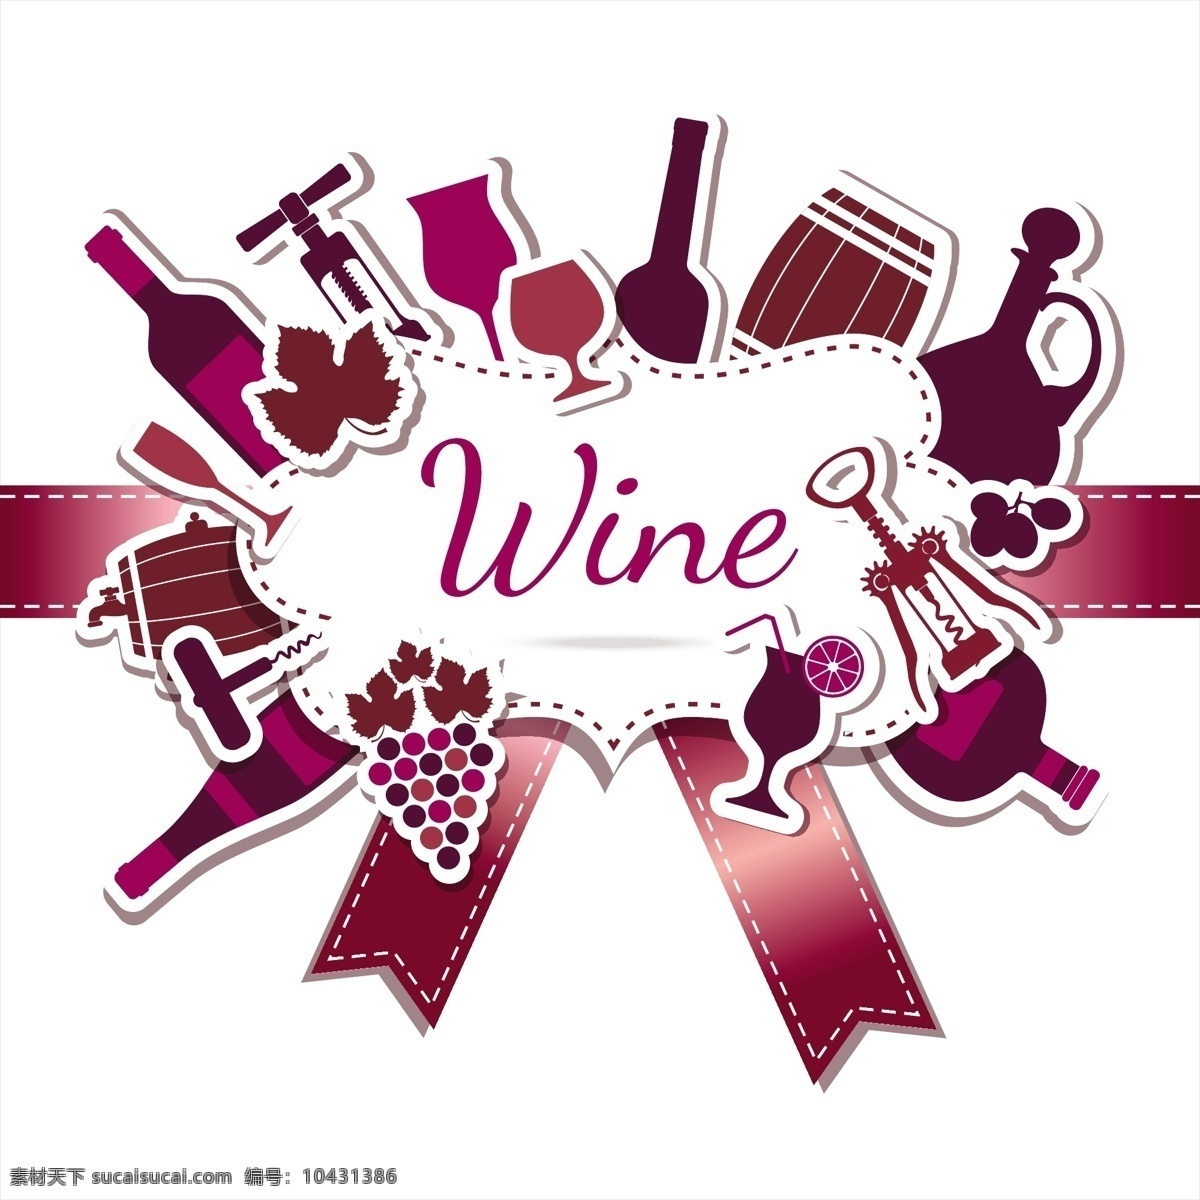 葡萄酒 标签 背景 葡萄酒标签 葡萄酒背景 矢量 矢量葡萄酒 白色